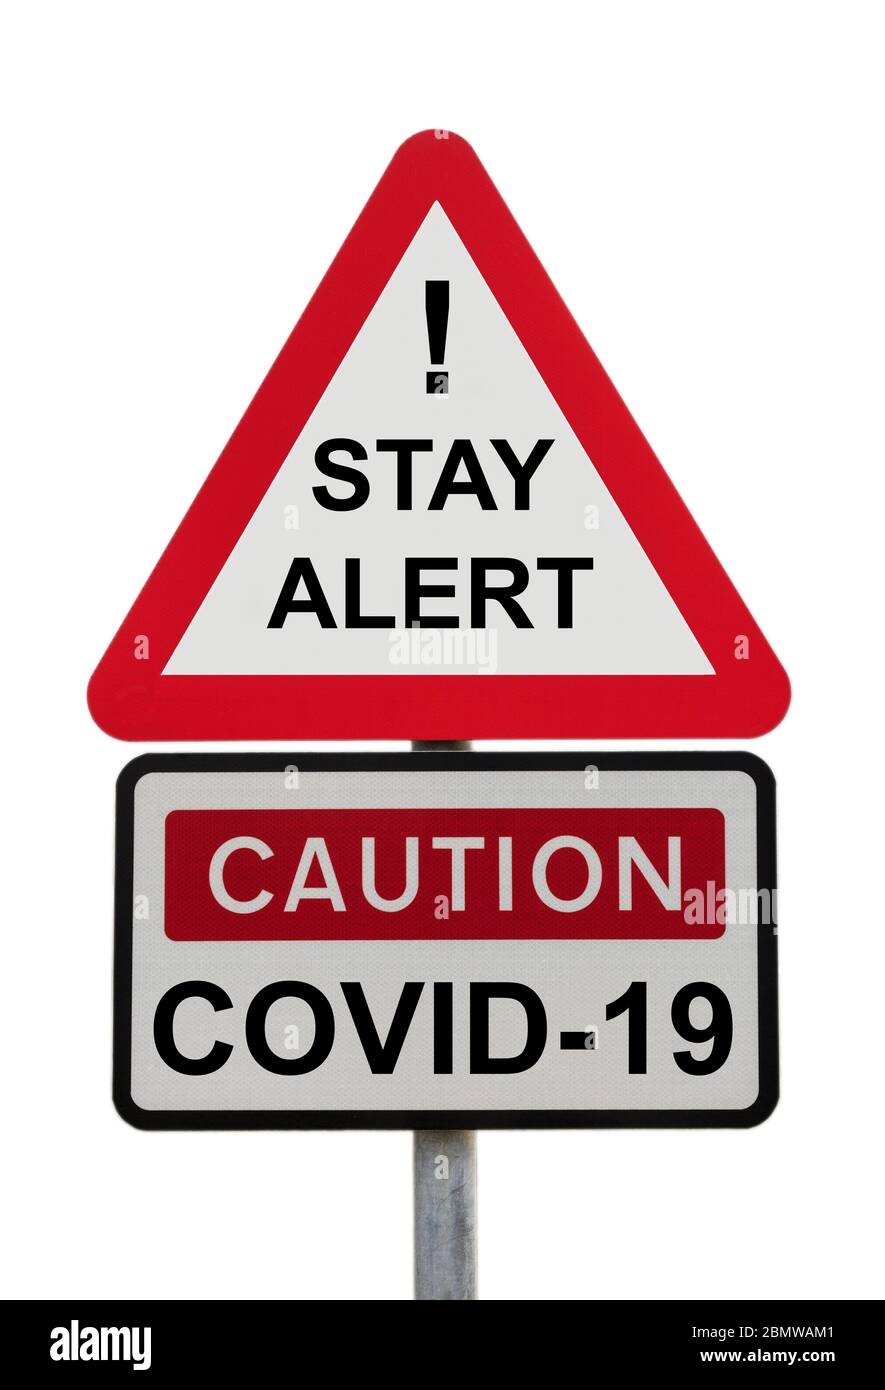 Dreieckiges Schild Warnung BLEIBEN SIE MIT Ausrufezeichen und Vorsicht COVID-19 aufmerksam, um die neue Coronavirus Lockdown-Nachricht der Regierung zu illustrieren. England, Großbritannien Stockfoto